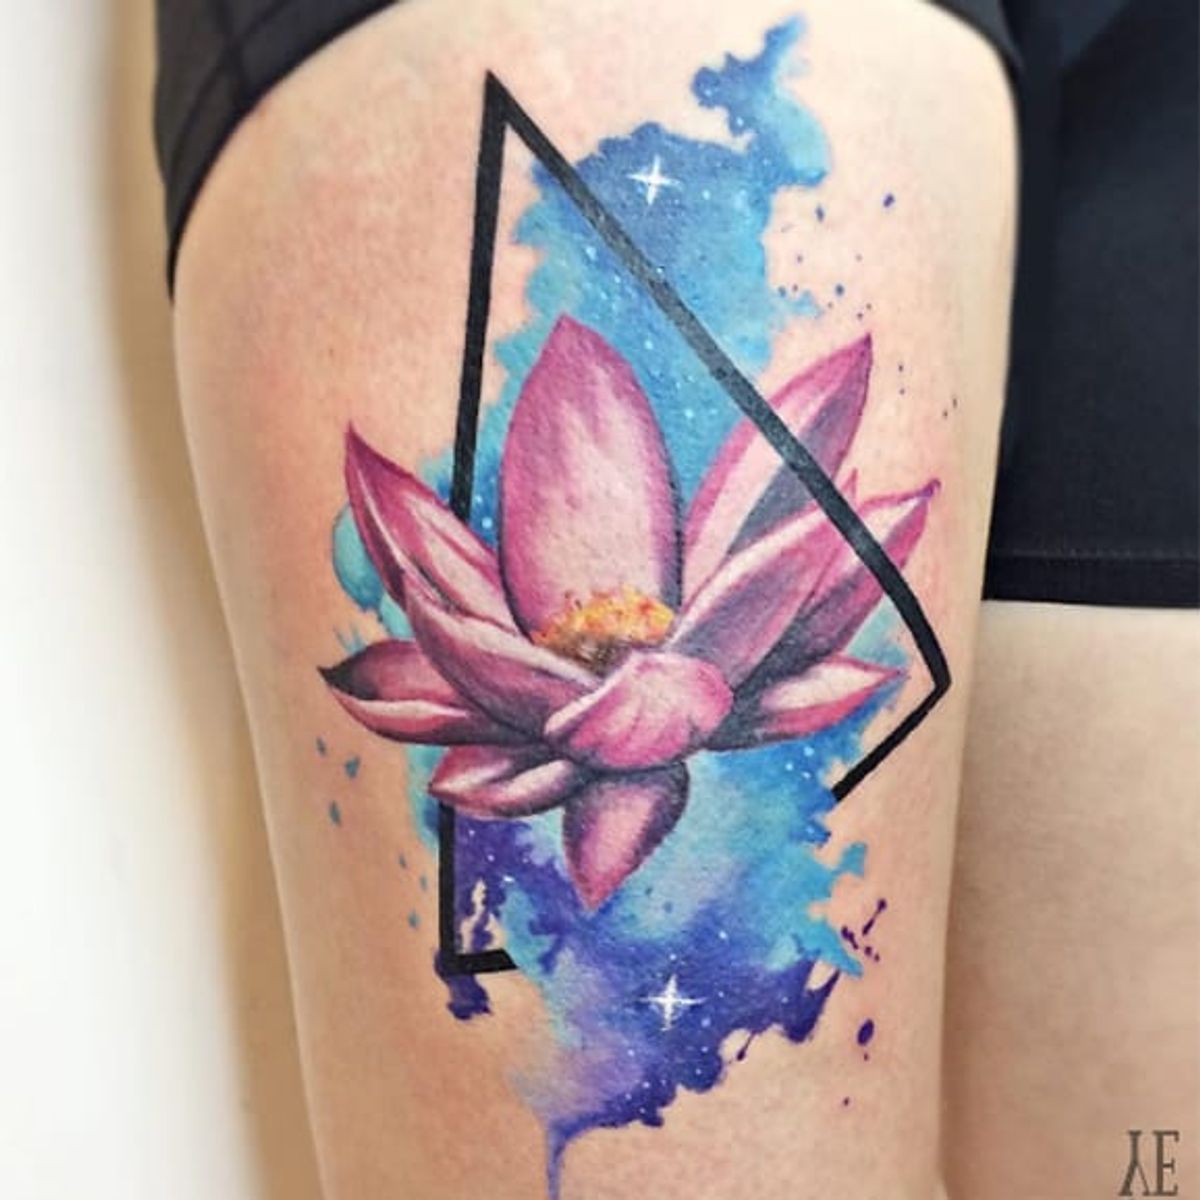 Tattoo uploaded by Paula Zeikmane • Geometry inspired water flower  #YelizÖzcan #fineline #watercolor #blackwork #geometric #triangle  #waterflower #floral • Tattoodo